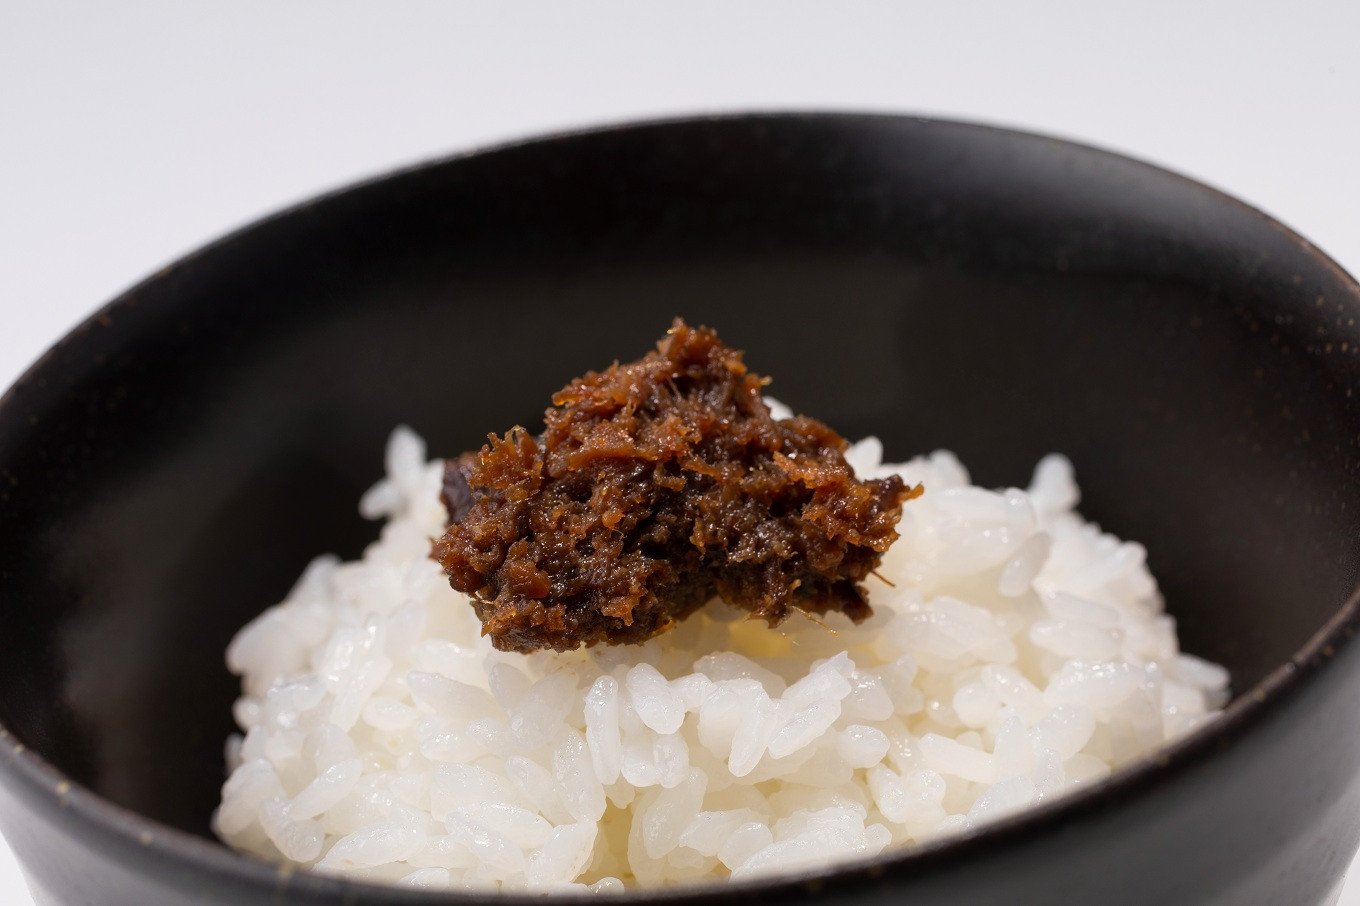 そぼろ煮には、地元特産・丹波黒大豆を原材料にした味噌を使用。